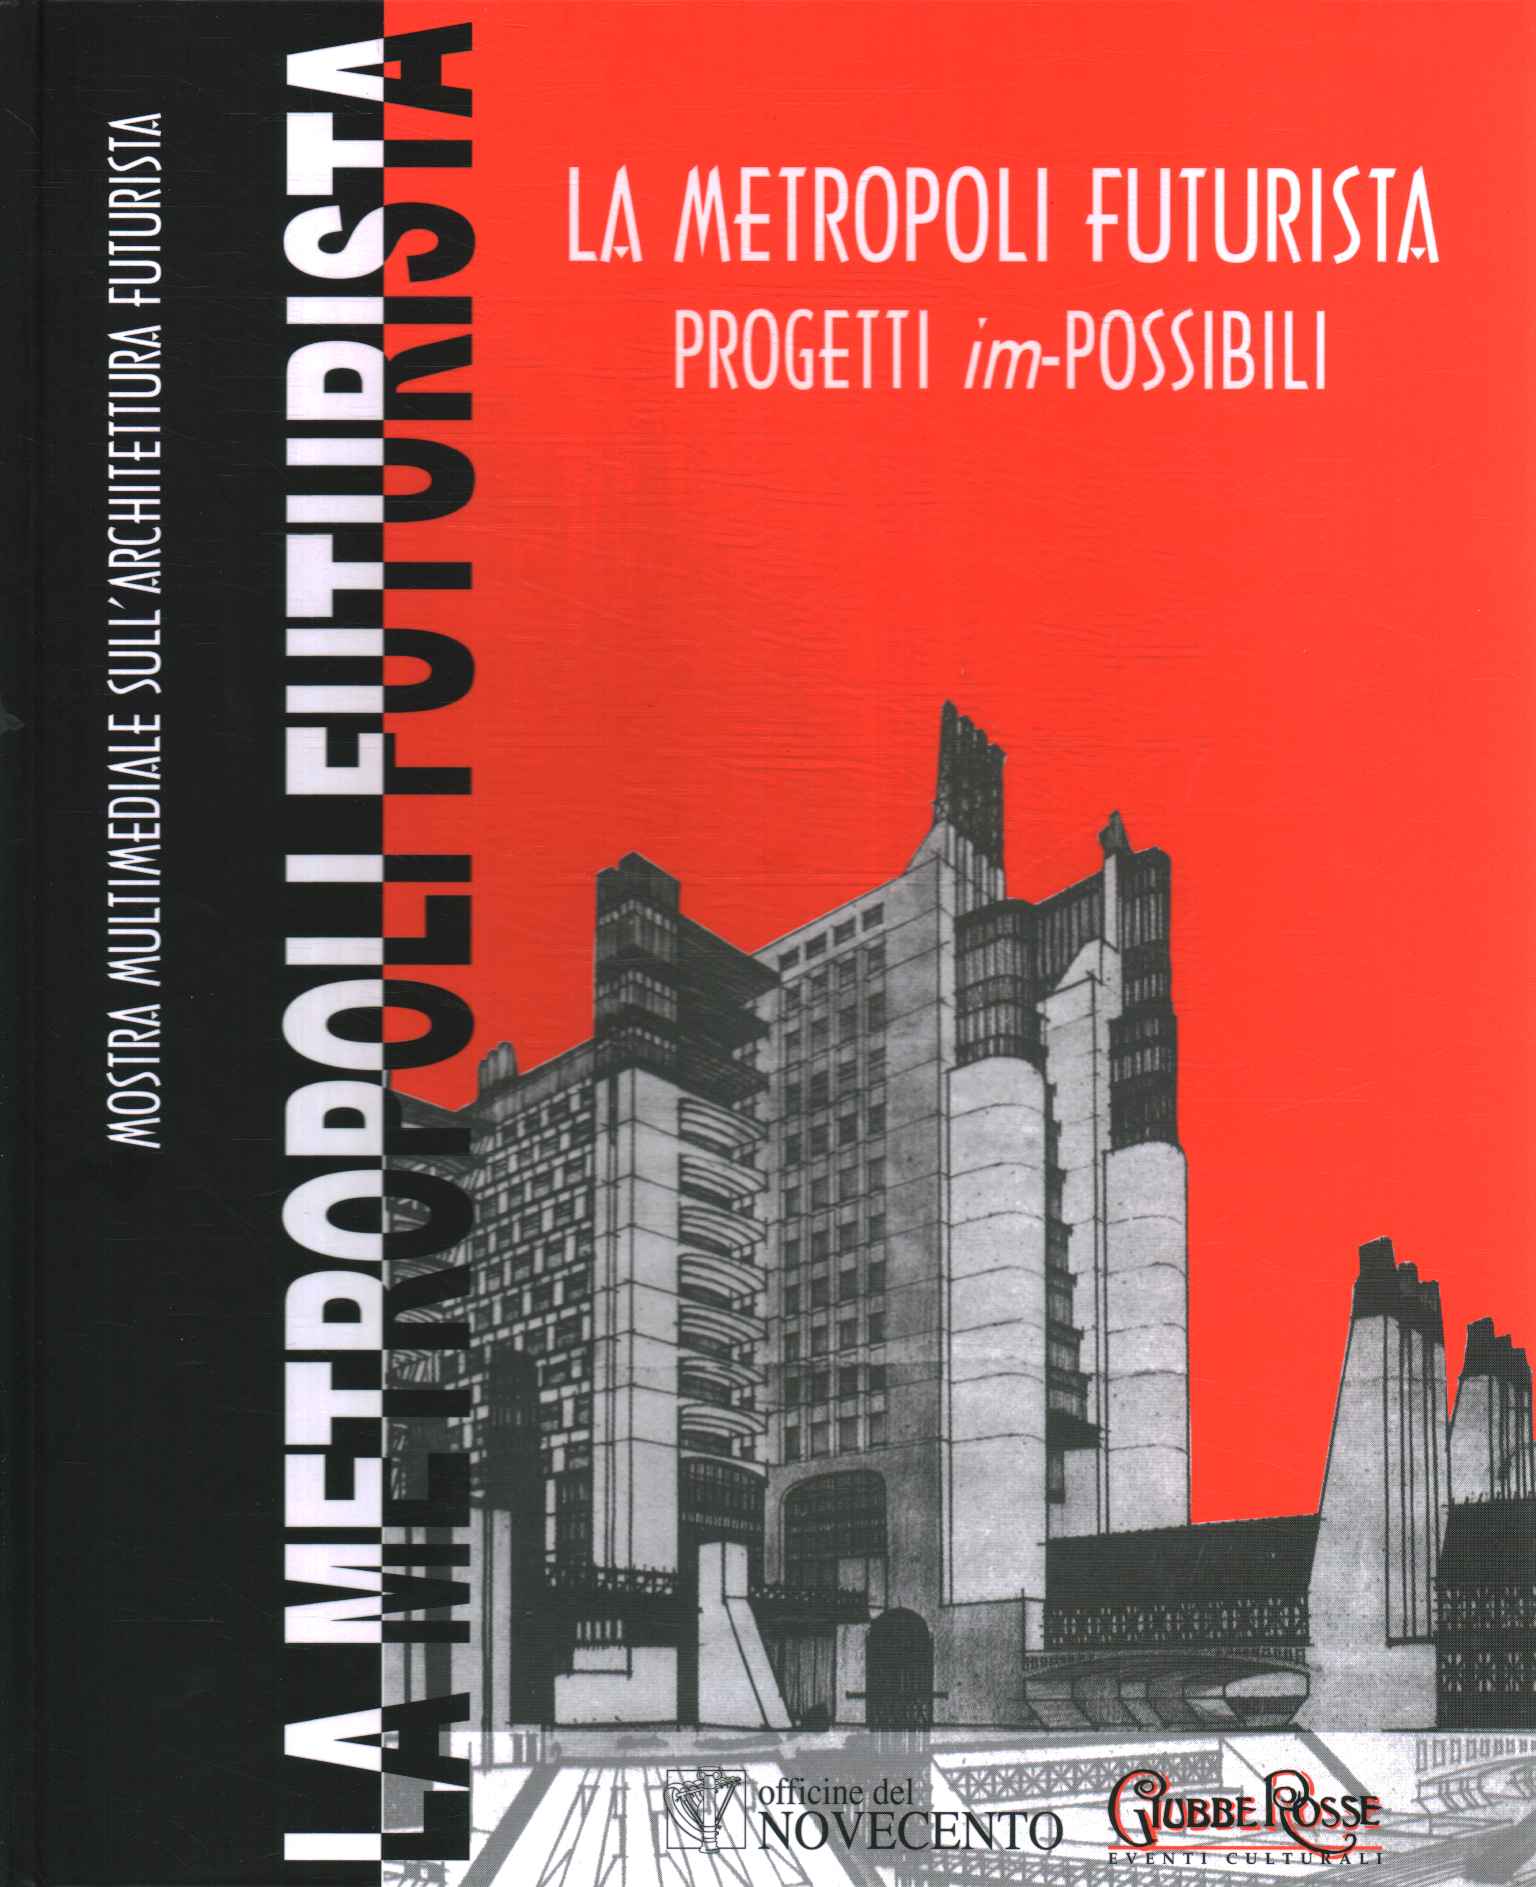 The futurist Metropolis. Projects im-possib